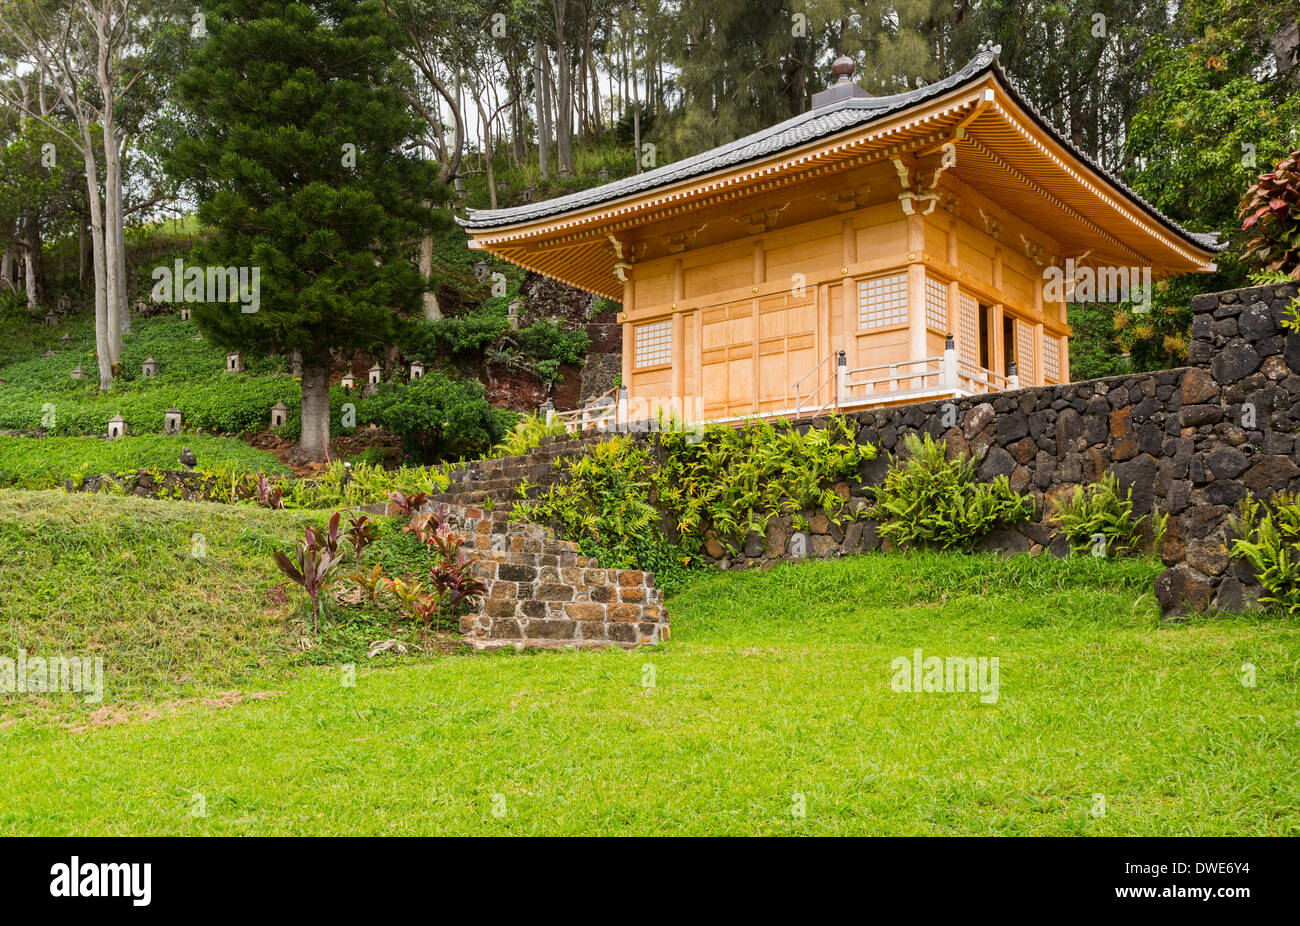 Lawai Centro Internazionale, Kauai, Hawaii, Stati Uniti d'America - La Sala della compassione, una replica del santuario buddista in Shikoku, Giappone Foto Stock